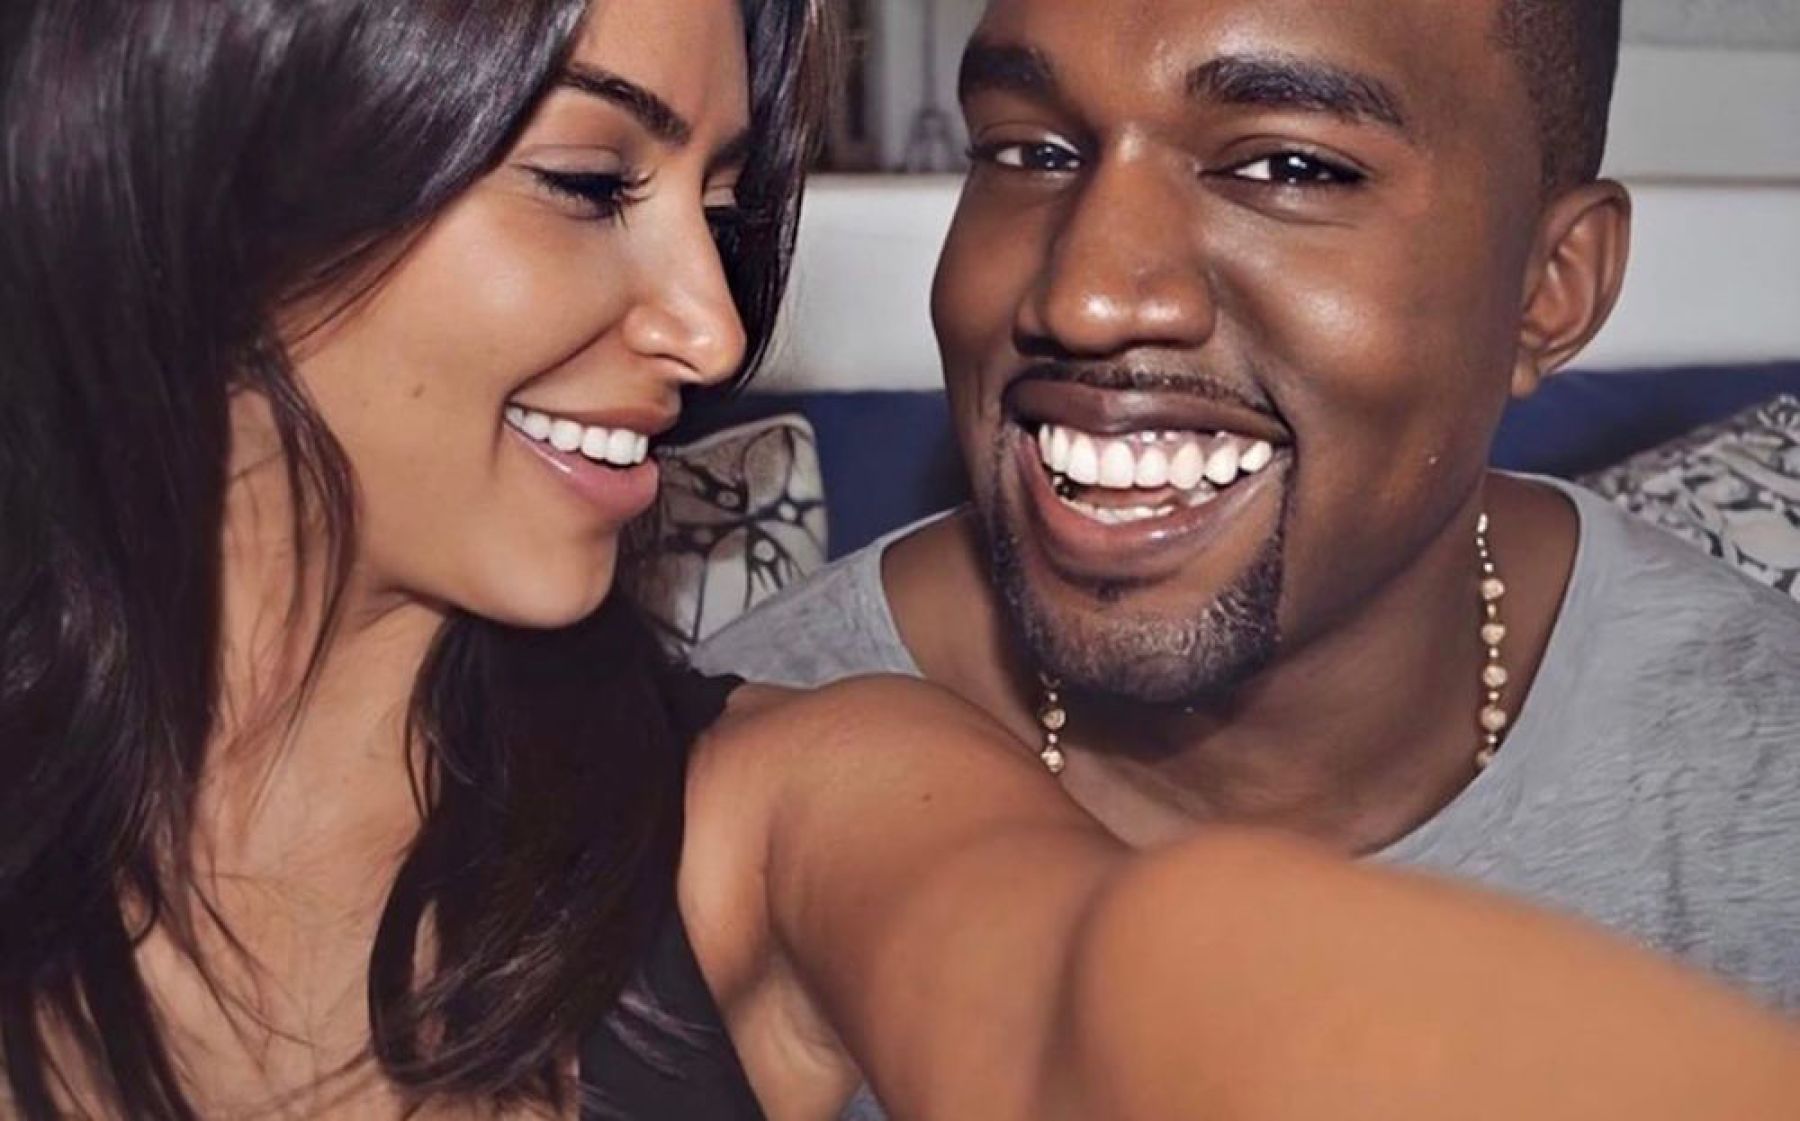 Kim cuidó a Kanye cuando se contagió de Covid-19